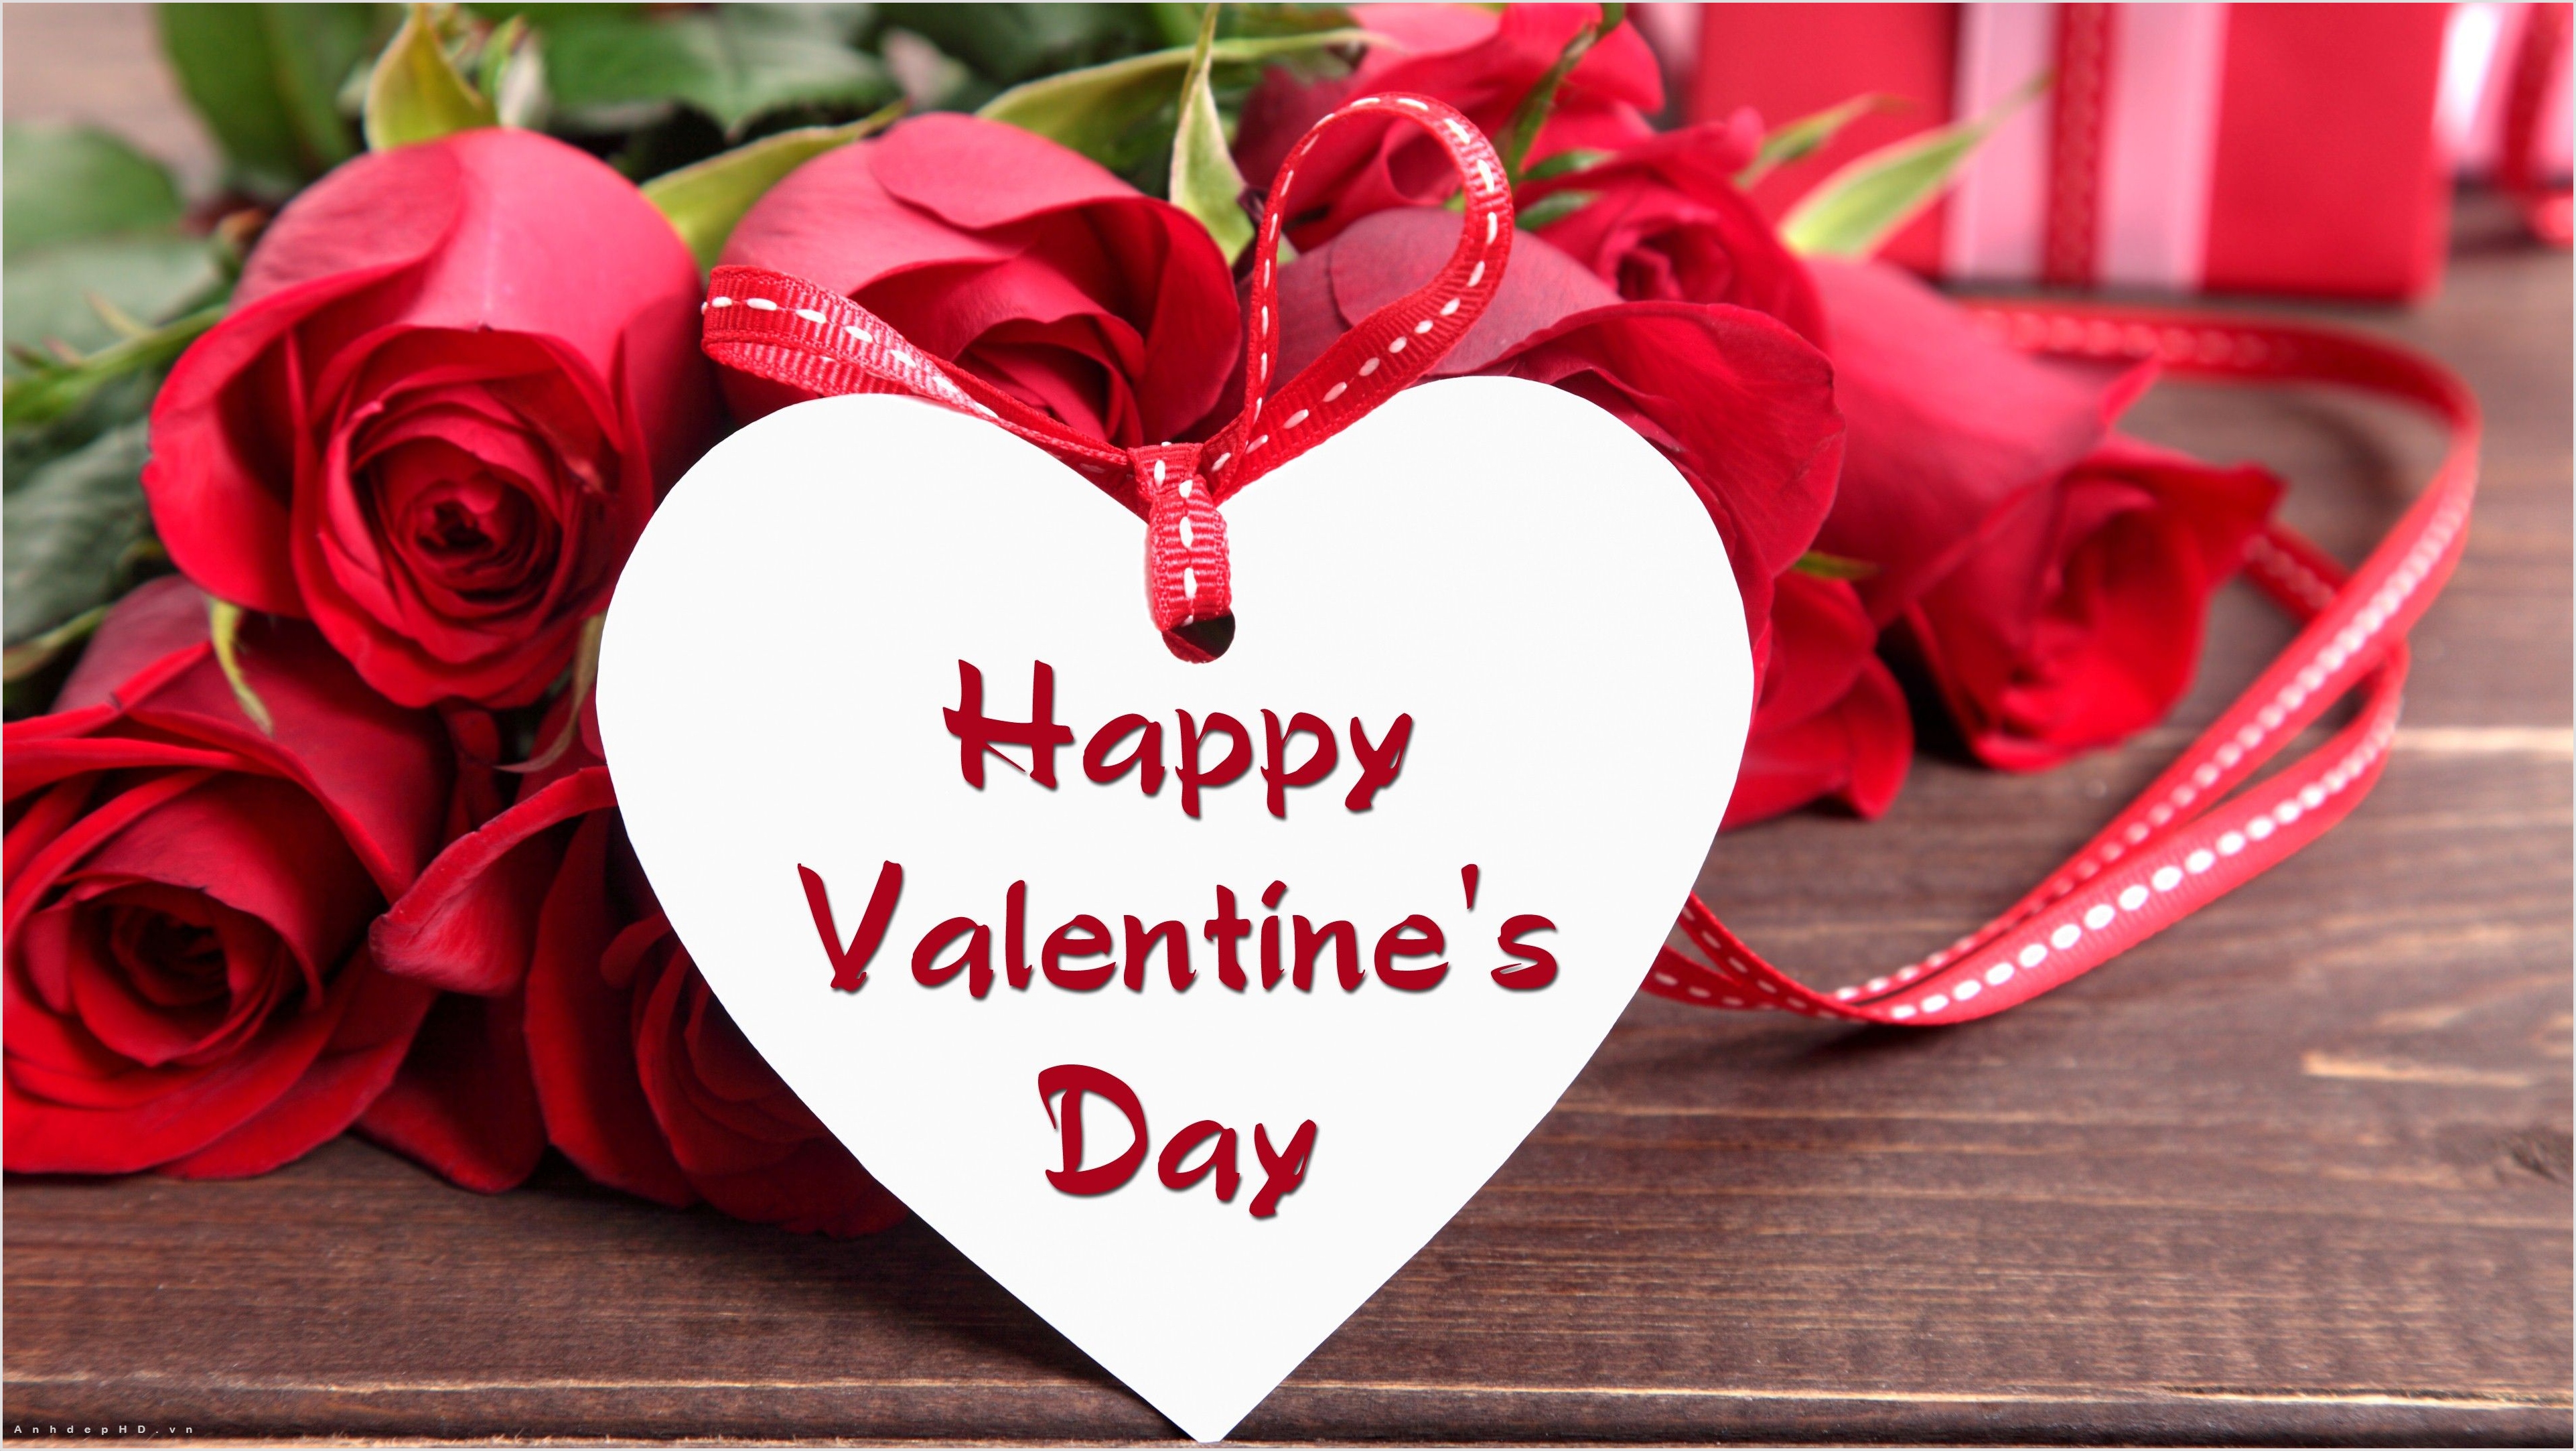 Hãy cùng chia sẻ những bức ảnh đẹp Valentine tuyệt vời này với người yêu của bạn để tạo thêm niềm vui cho một ngày đặc biệt. Để tìm kiếm những hình ảnh độc đáo nhất, bạn chỉ cần bấm vào hình ảnh và khám phá thế giới tuyệt vời của tình yêu.